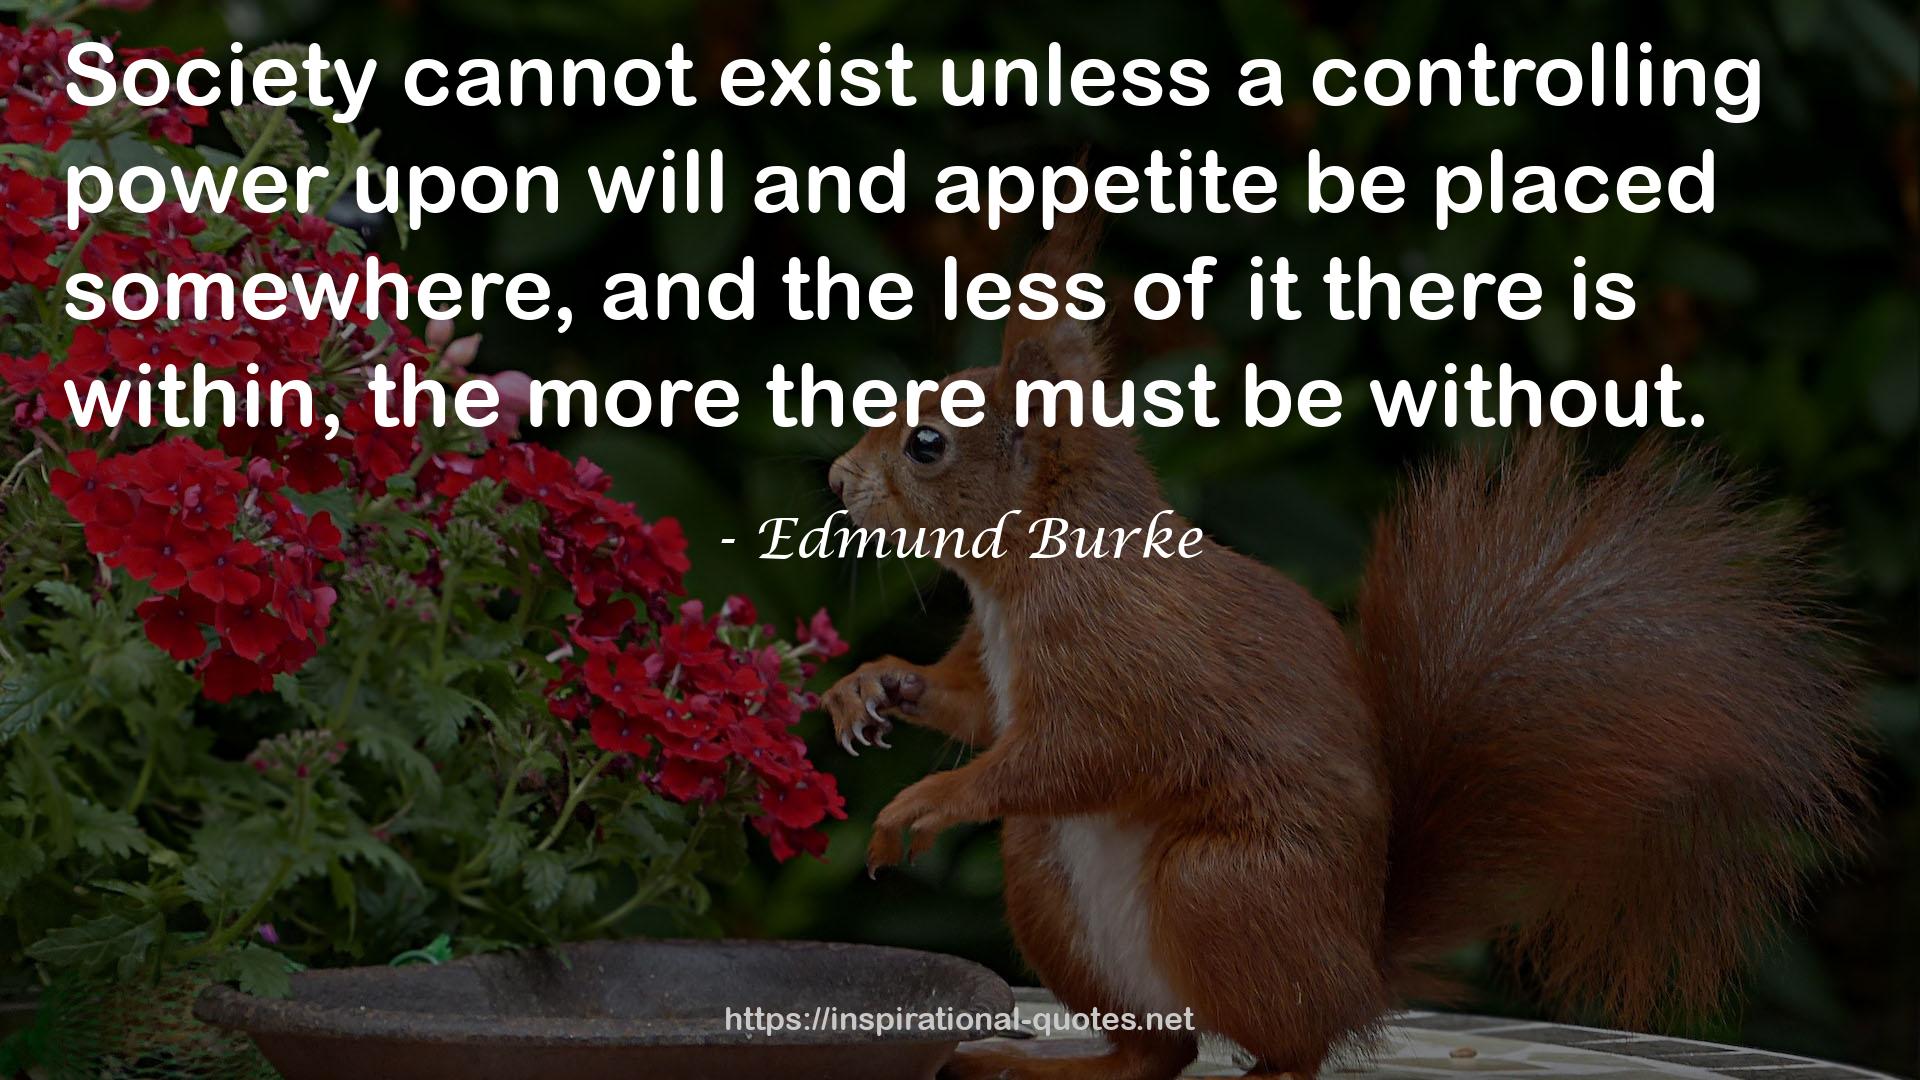 Edmund Burke QUOTES